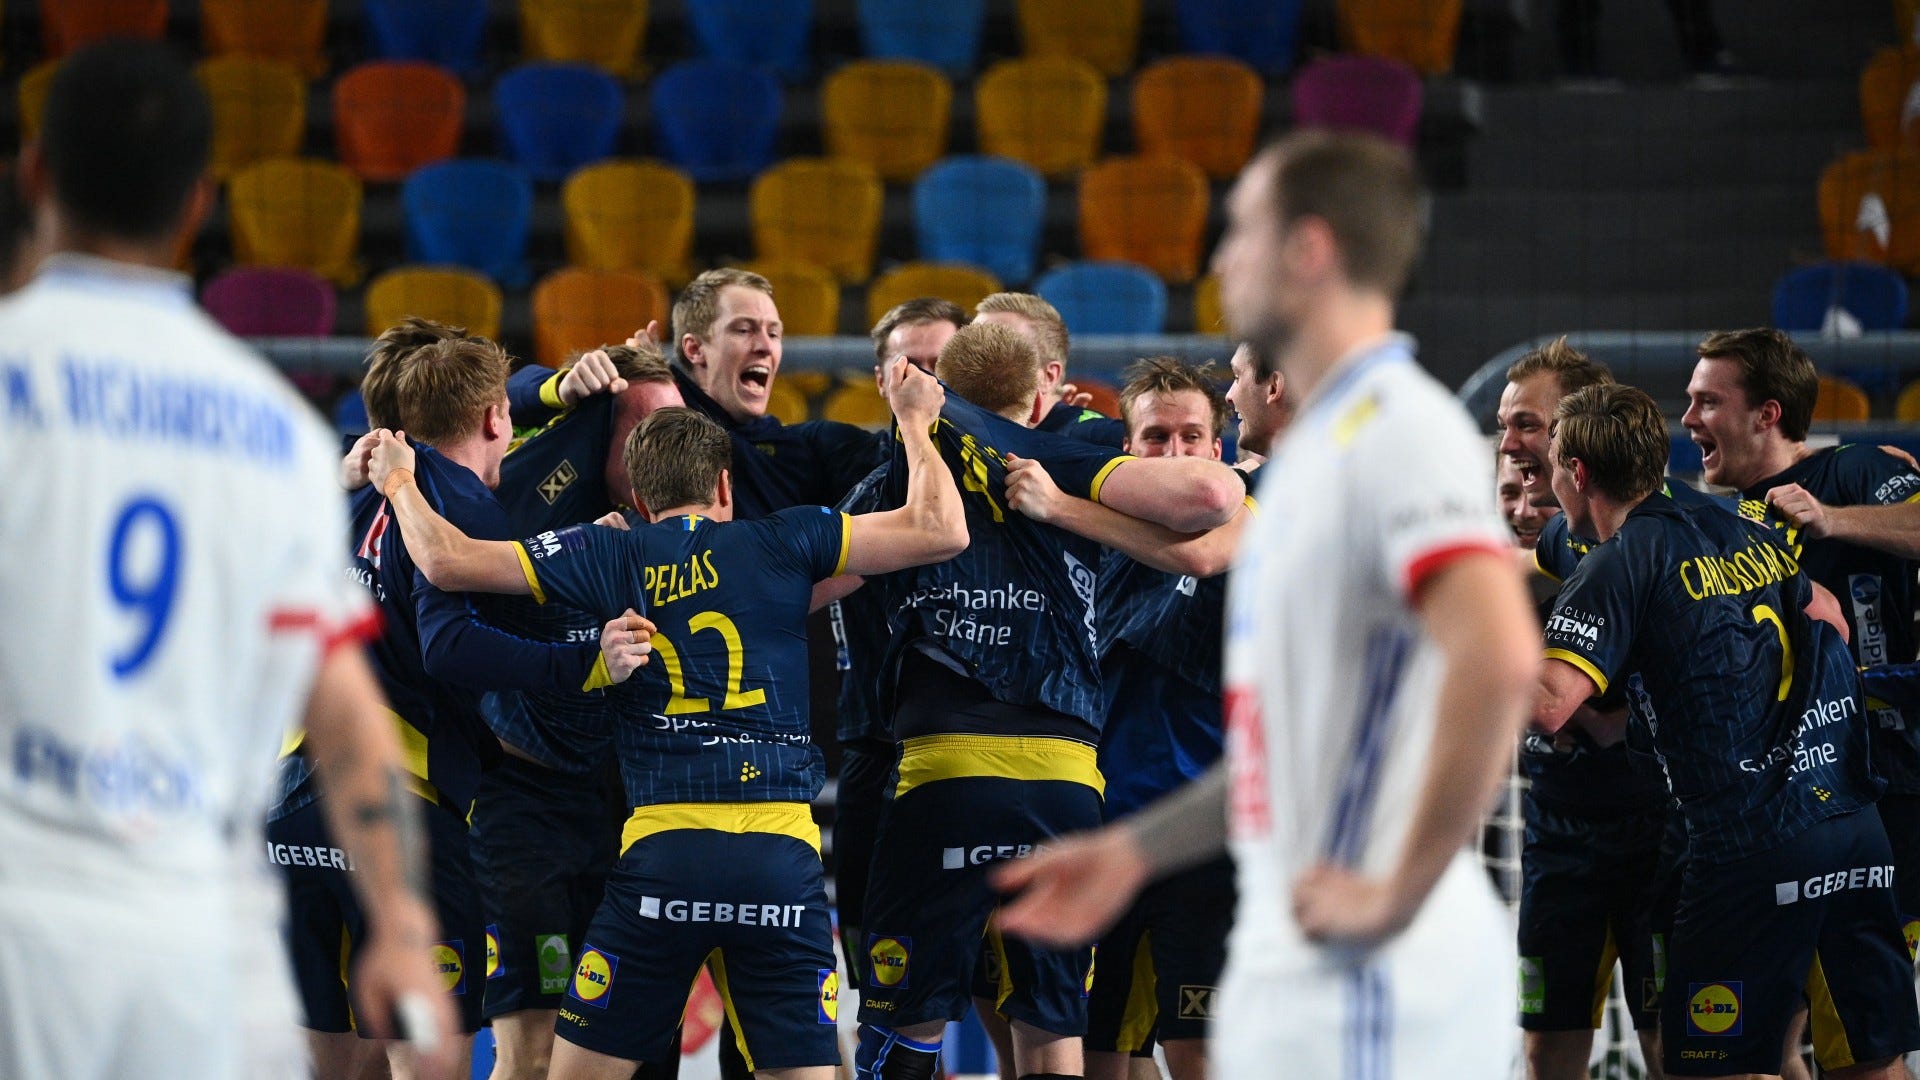 Finale der Handball-WM Dänemark gegen Schweden heute live im TV und im LIVE-STREAM sehen Goal Deutschland